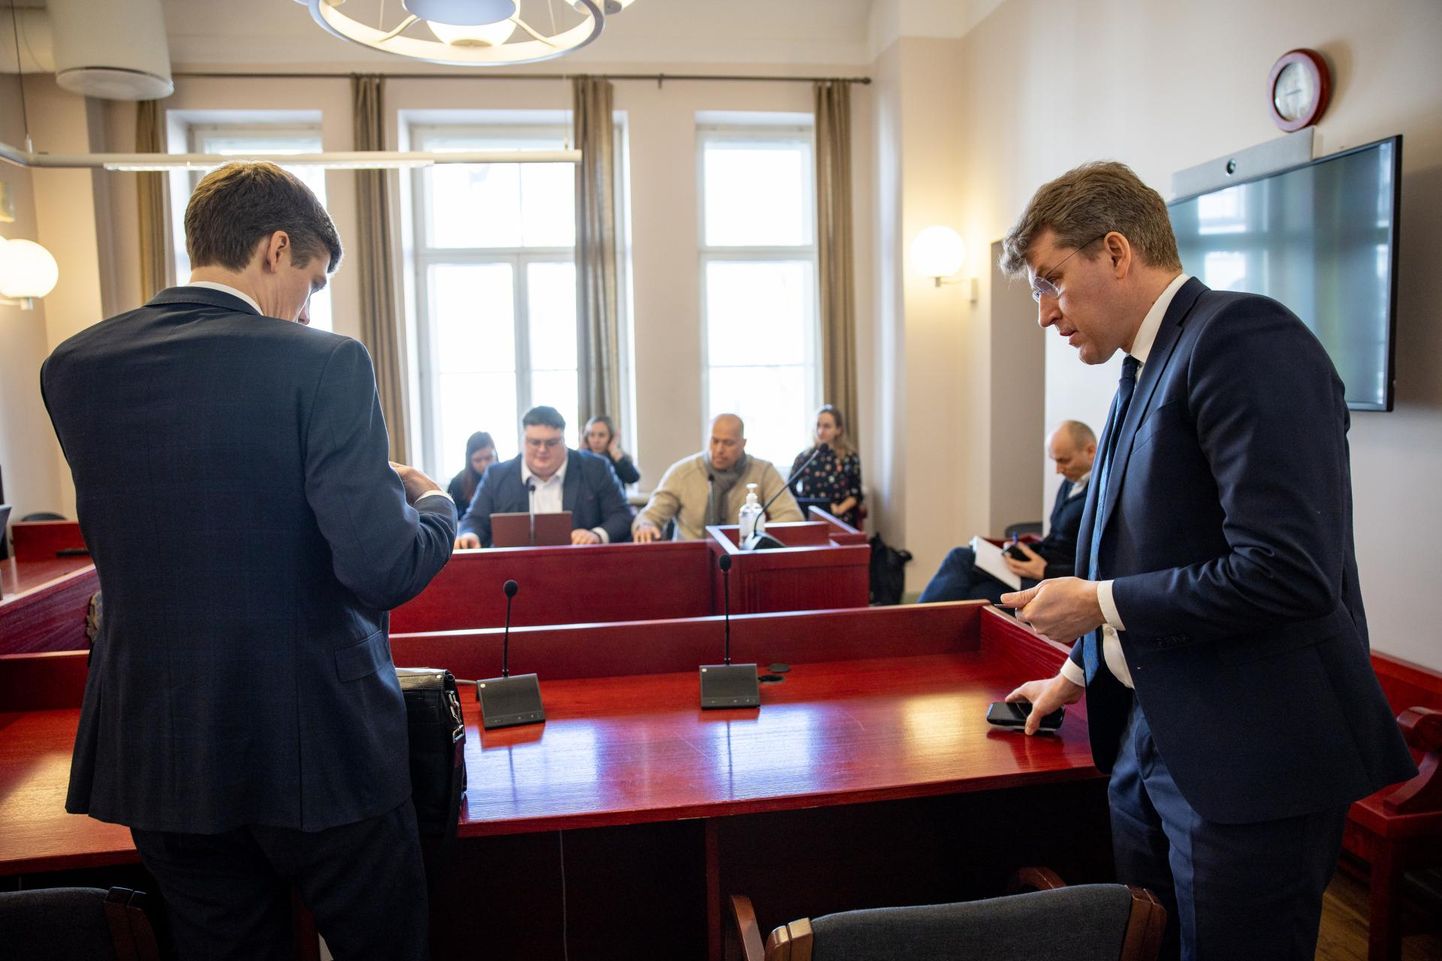 Andres Metsoja (paremal) põhjendas kokkuleppega nõustumist, et pidas mõistlikuks lõpetada kohtuvaidlus, vähendamaks kohtu koormust.